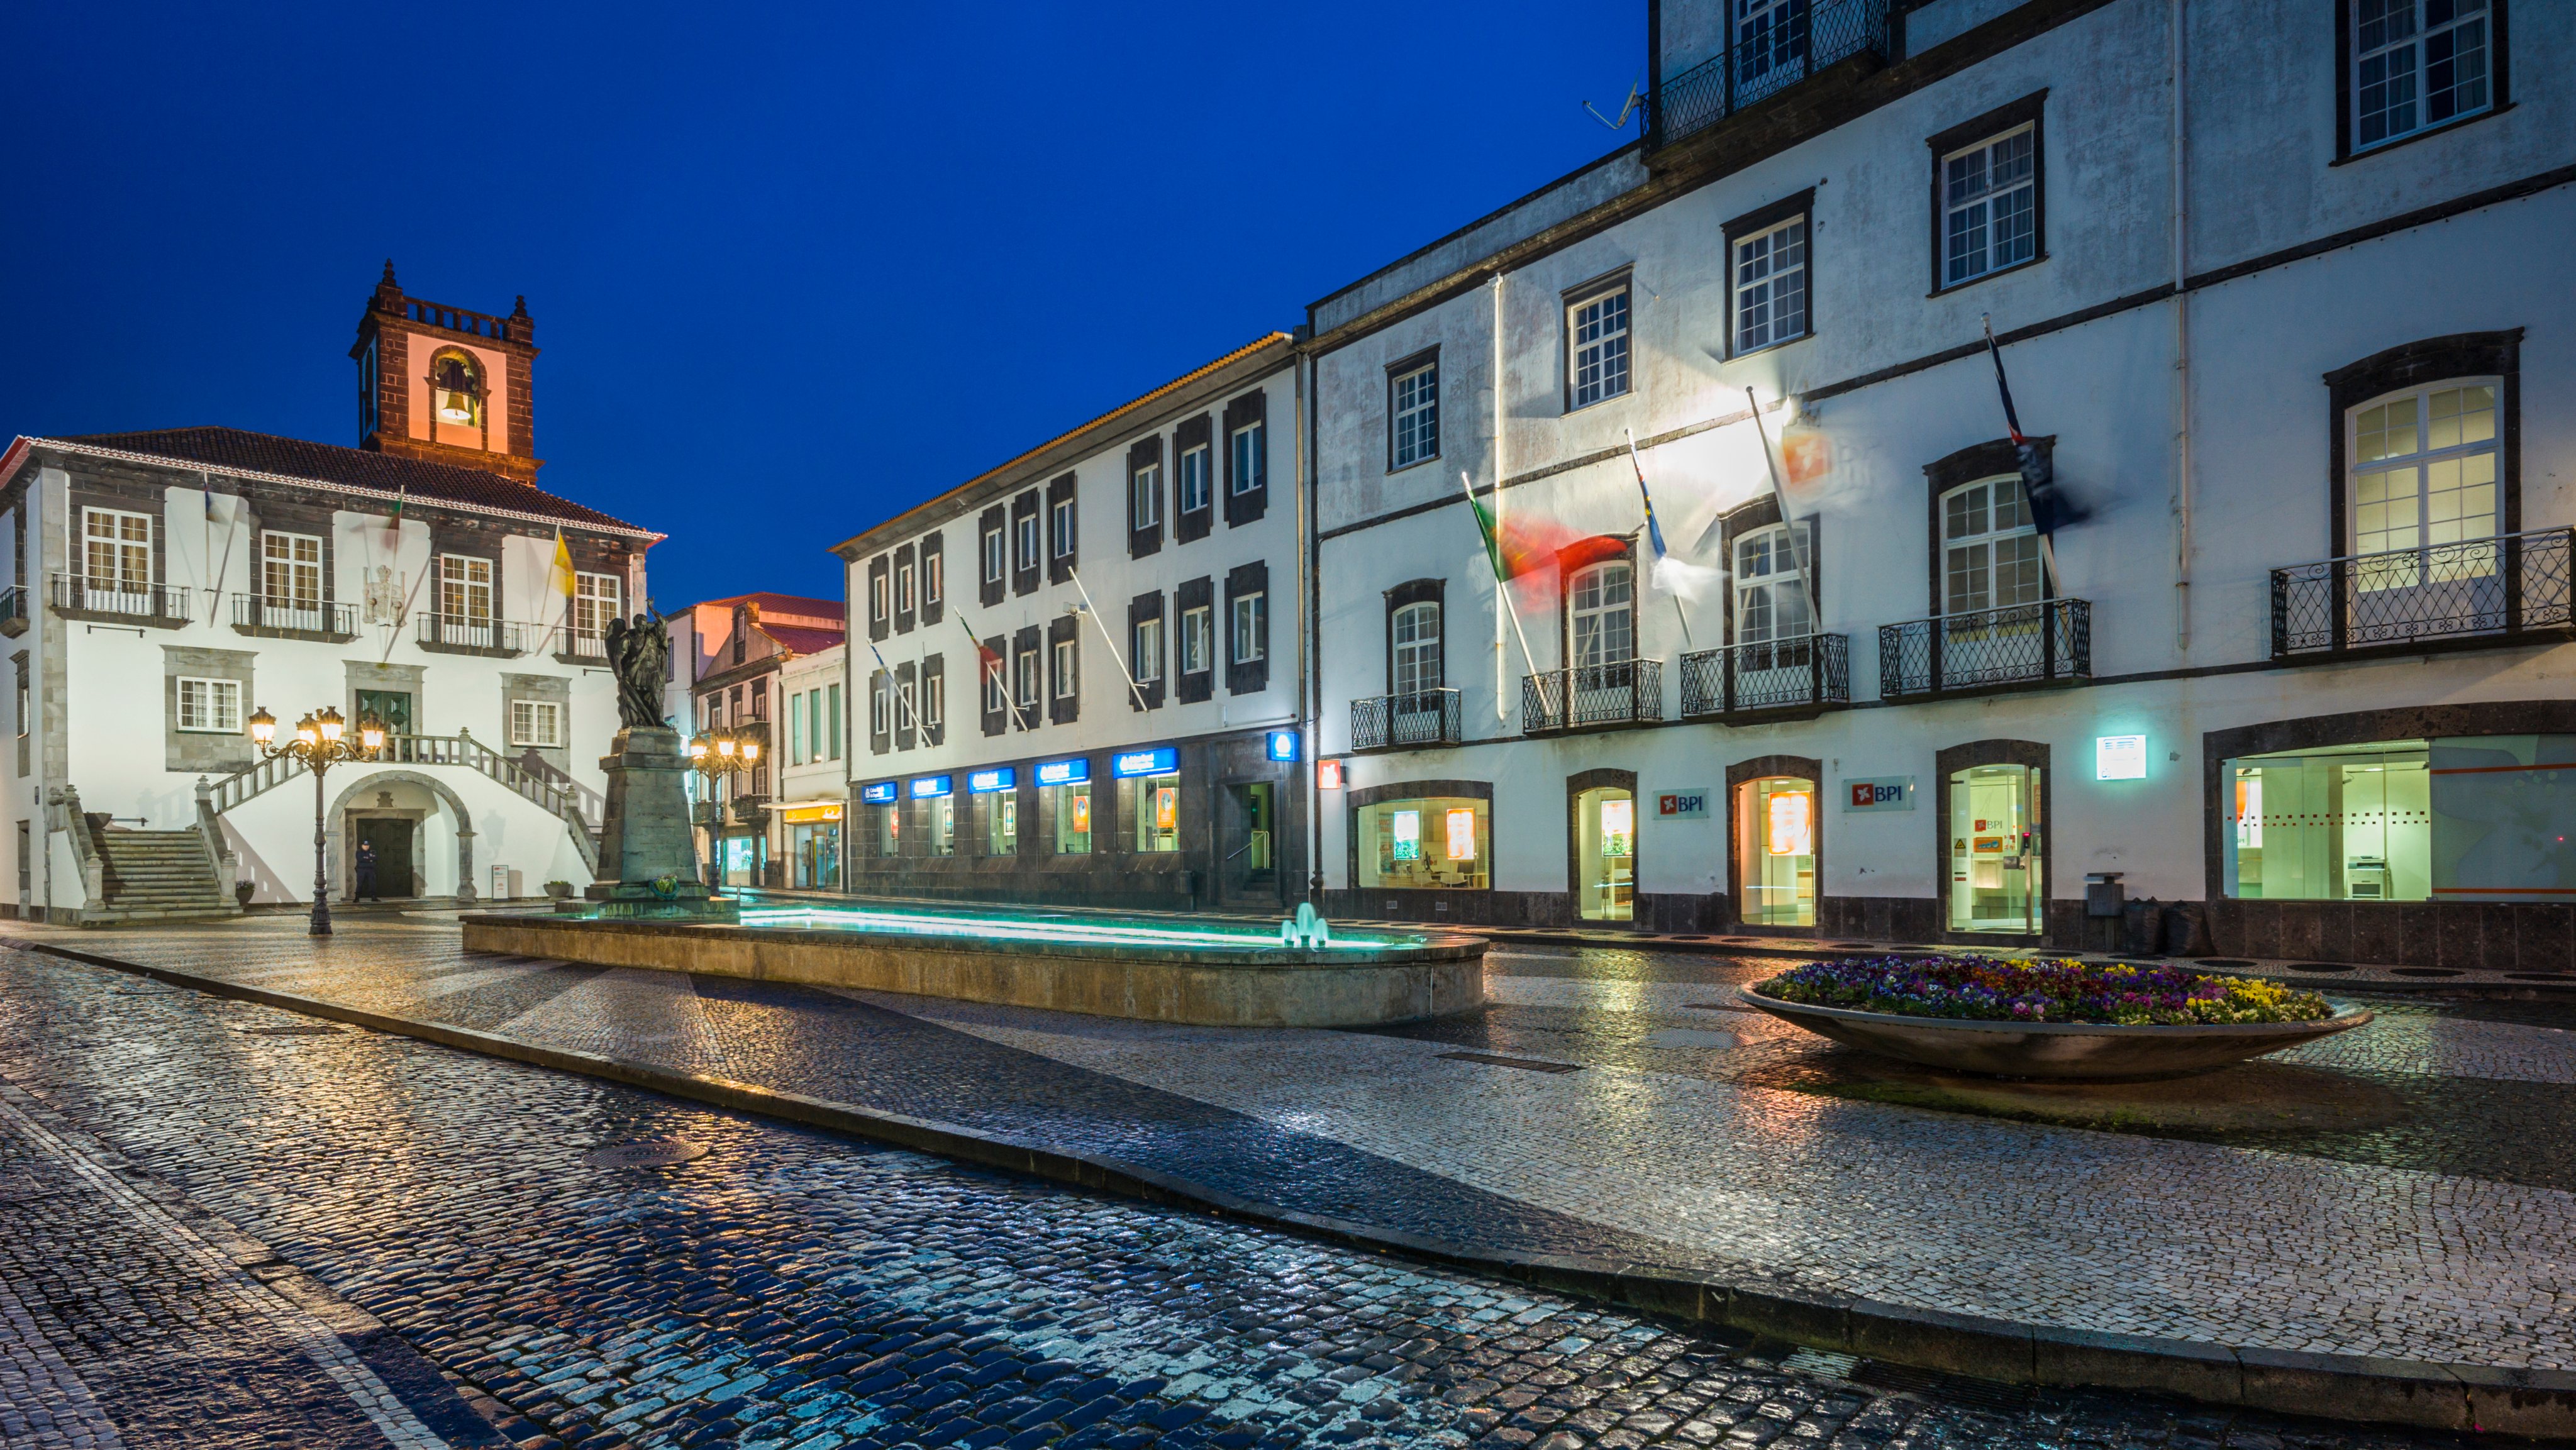 Azores, Sao Miguel Island, Ponta Delgada, town hall